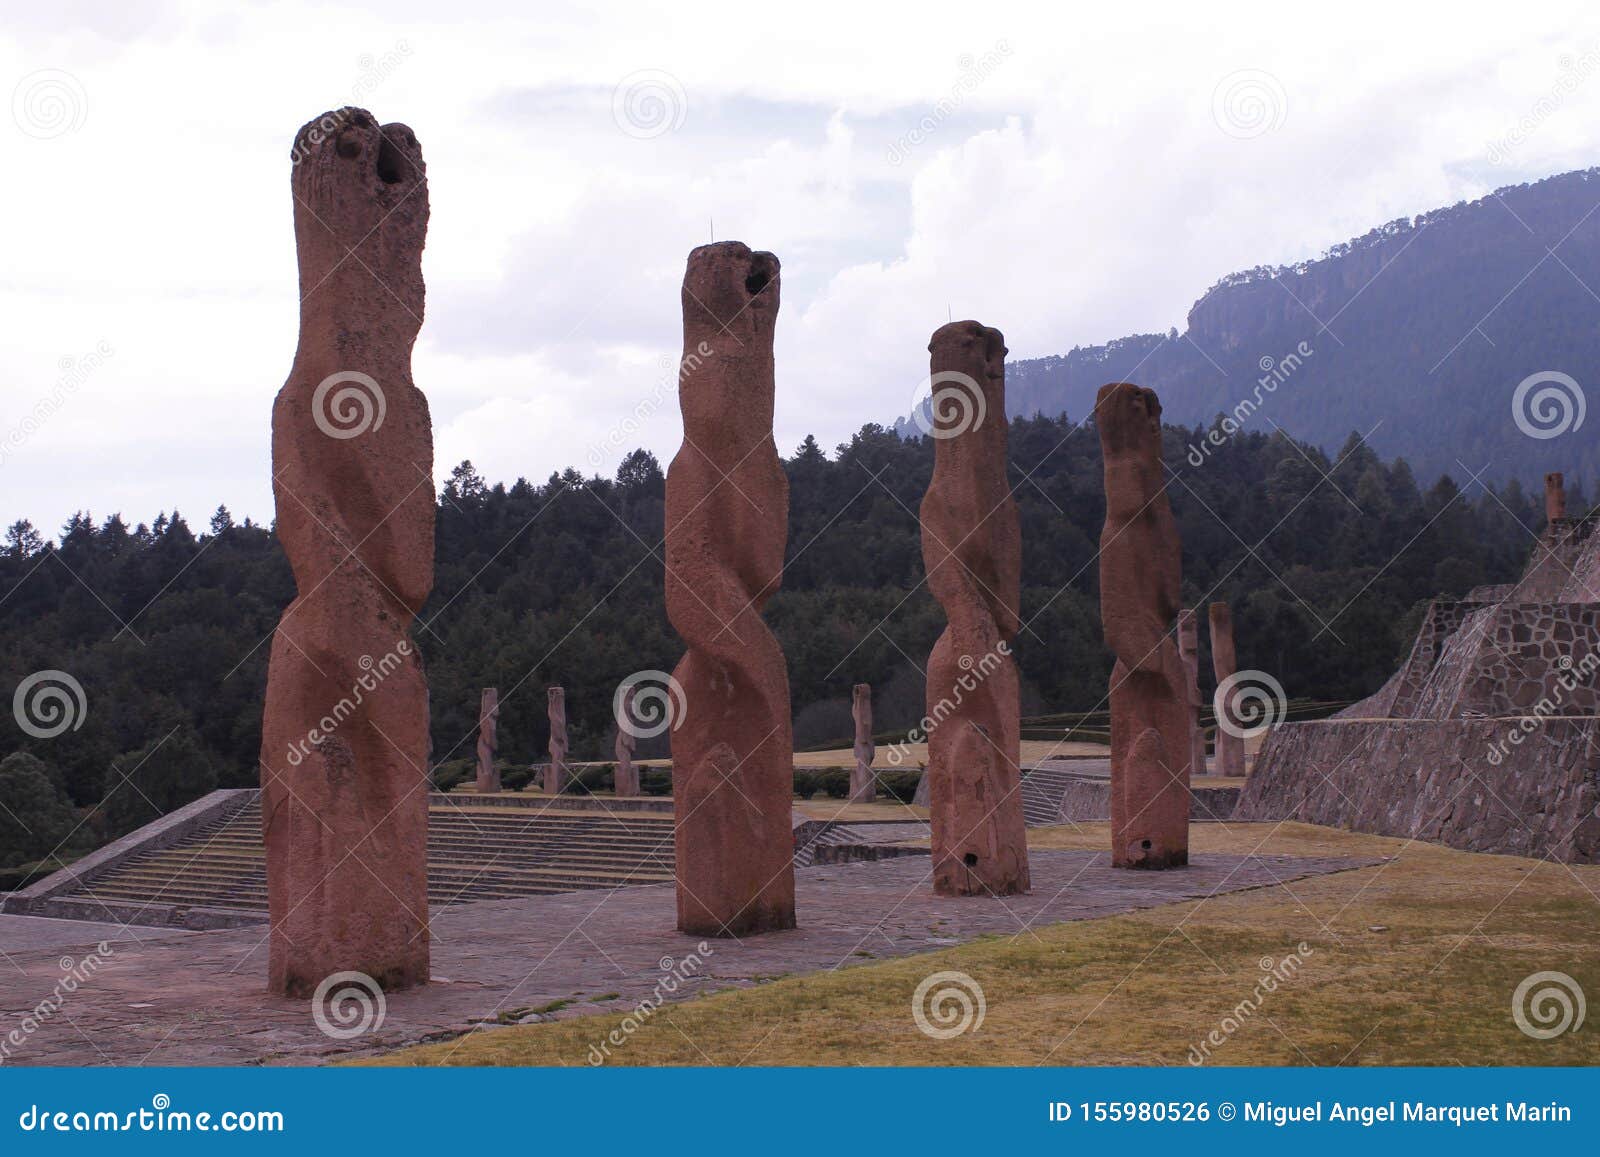 four sculptures in centro ceremonial otomi, estado de mexico. back view